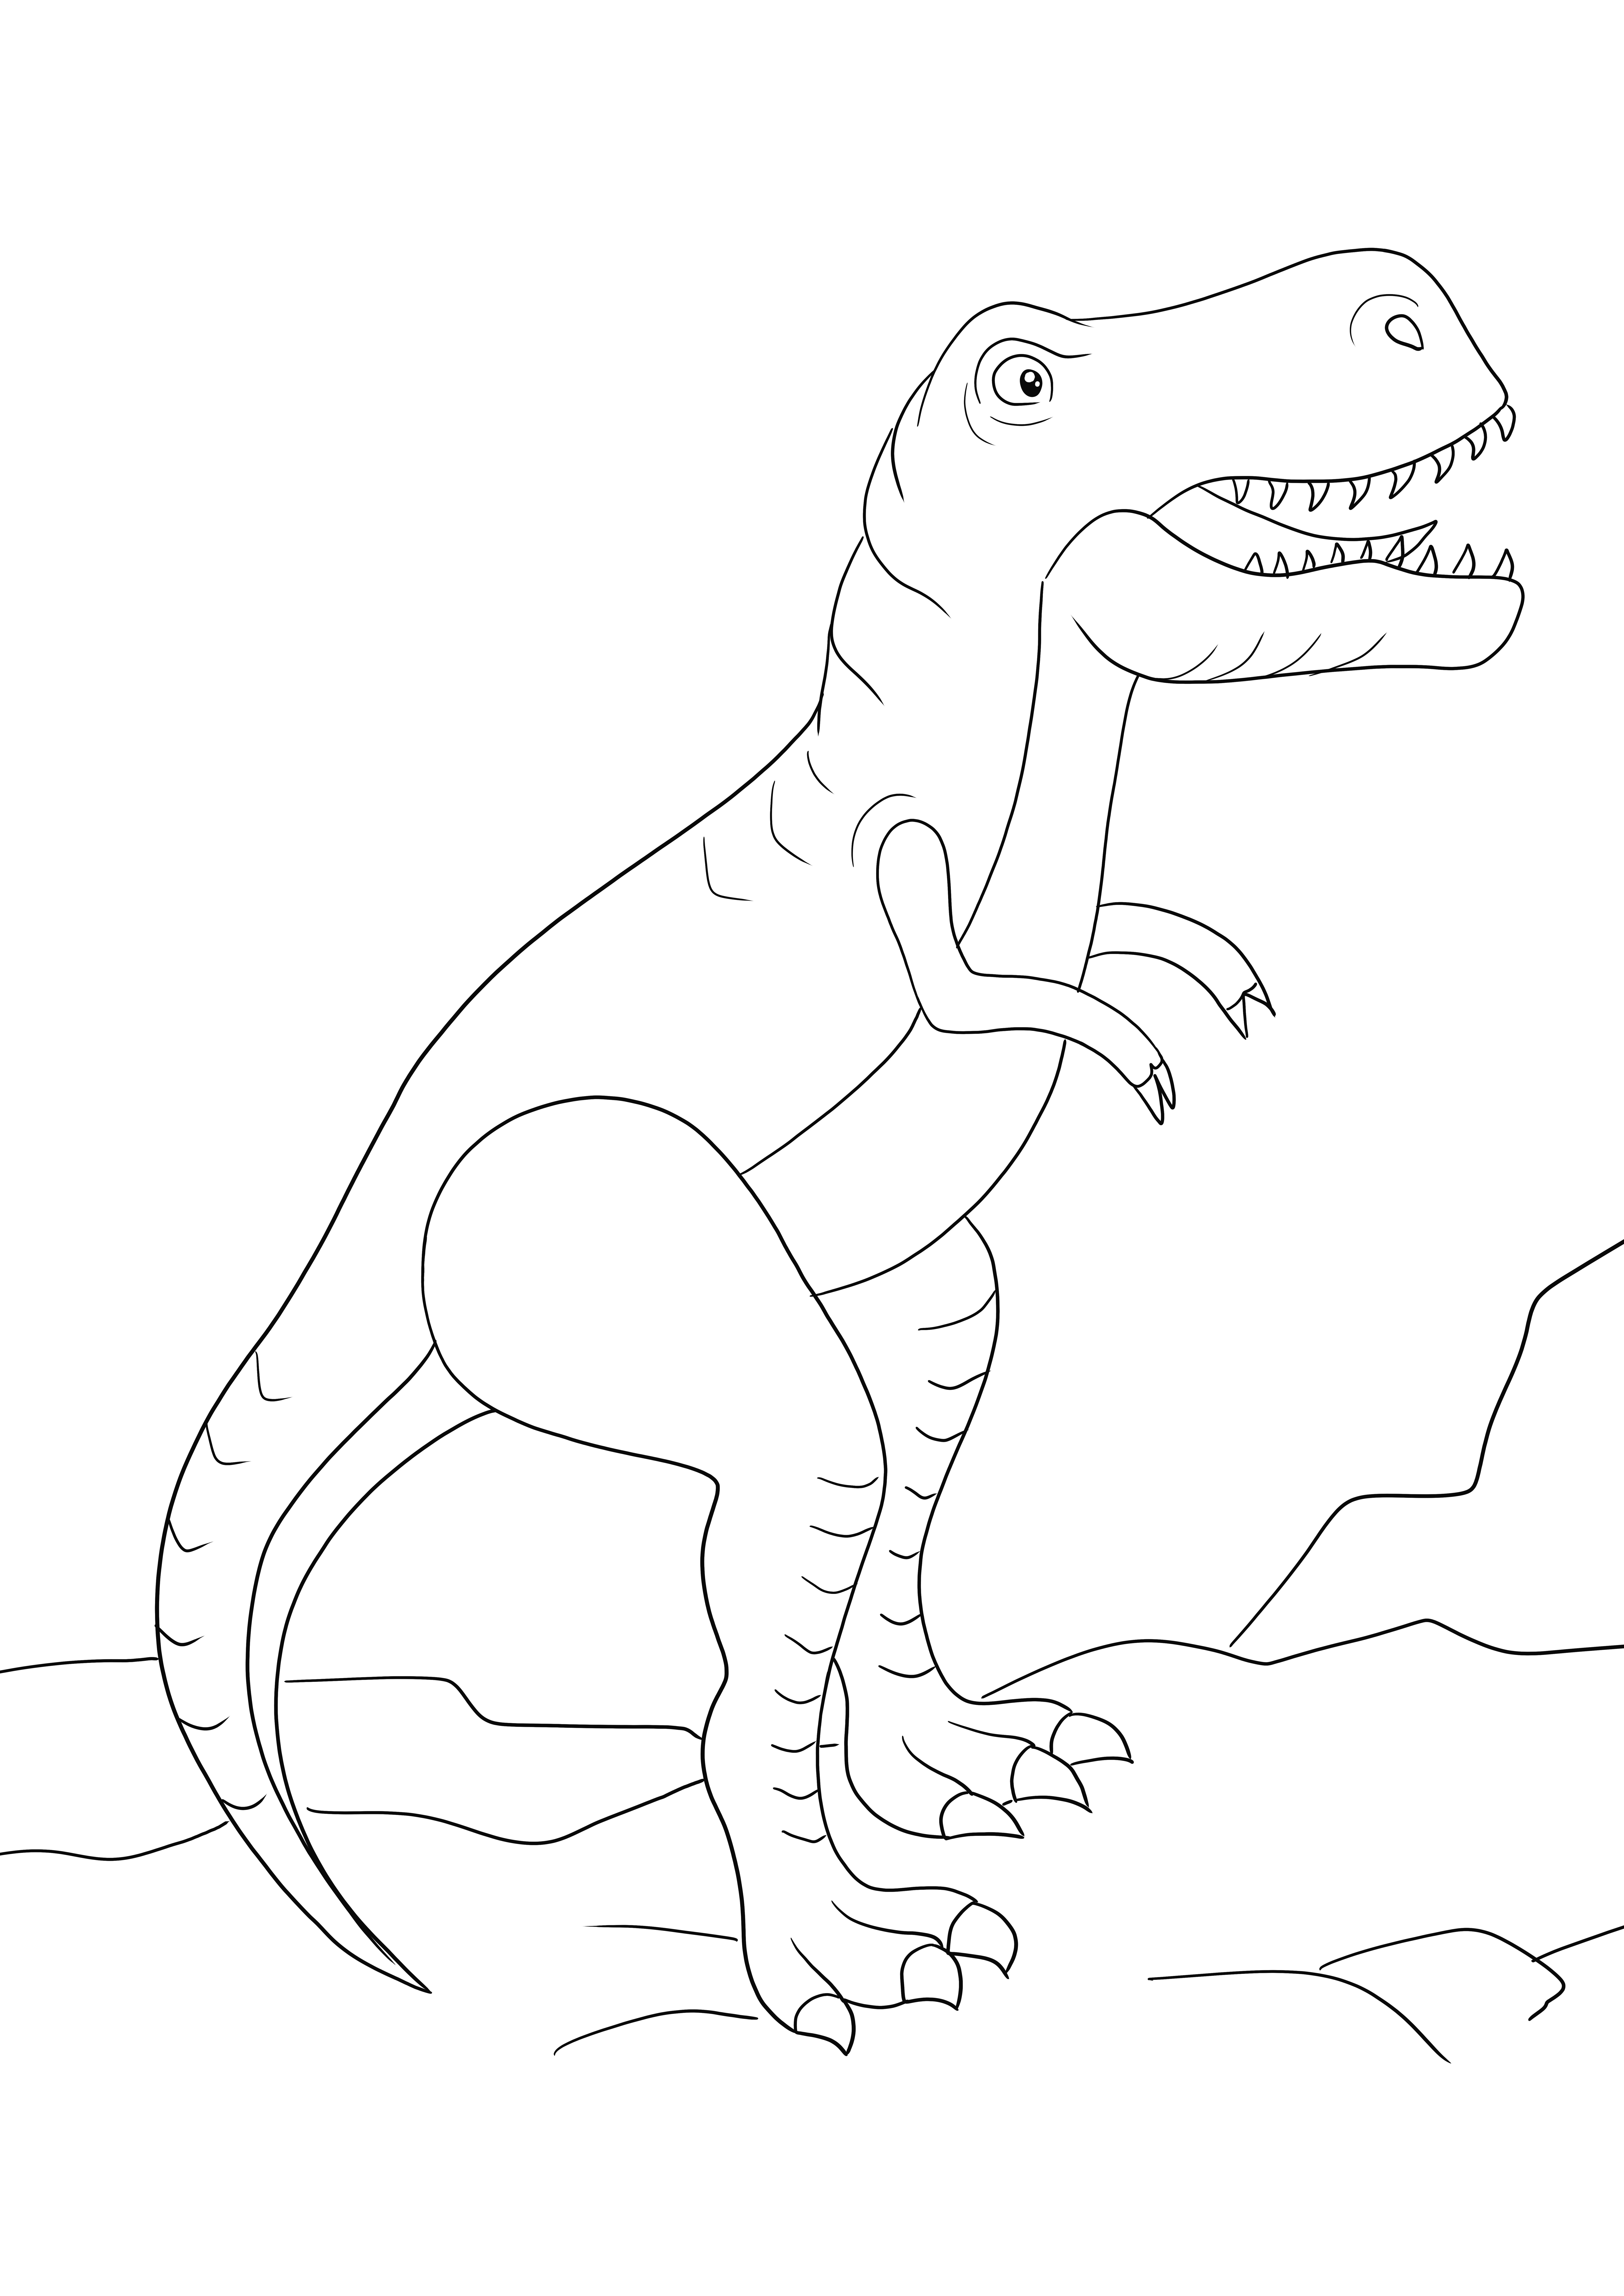 Büyük bir T-Rex'in ücretsiz ve renkli olarak indirilmesi için bir boyama sayfası